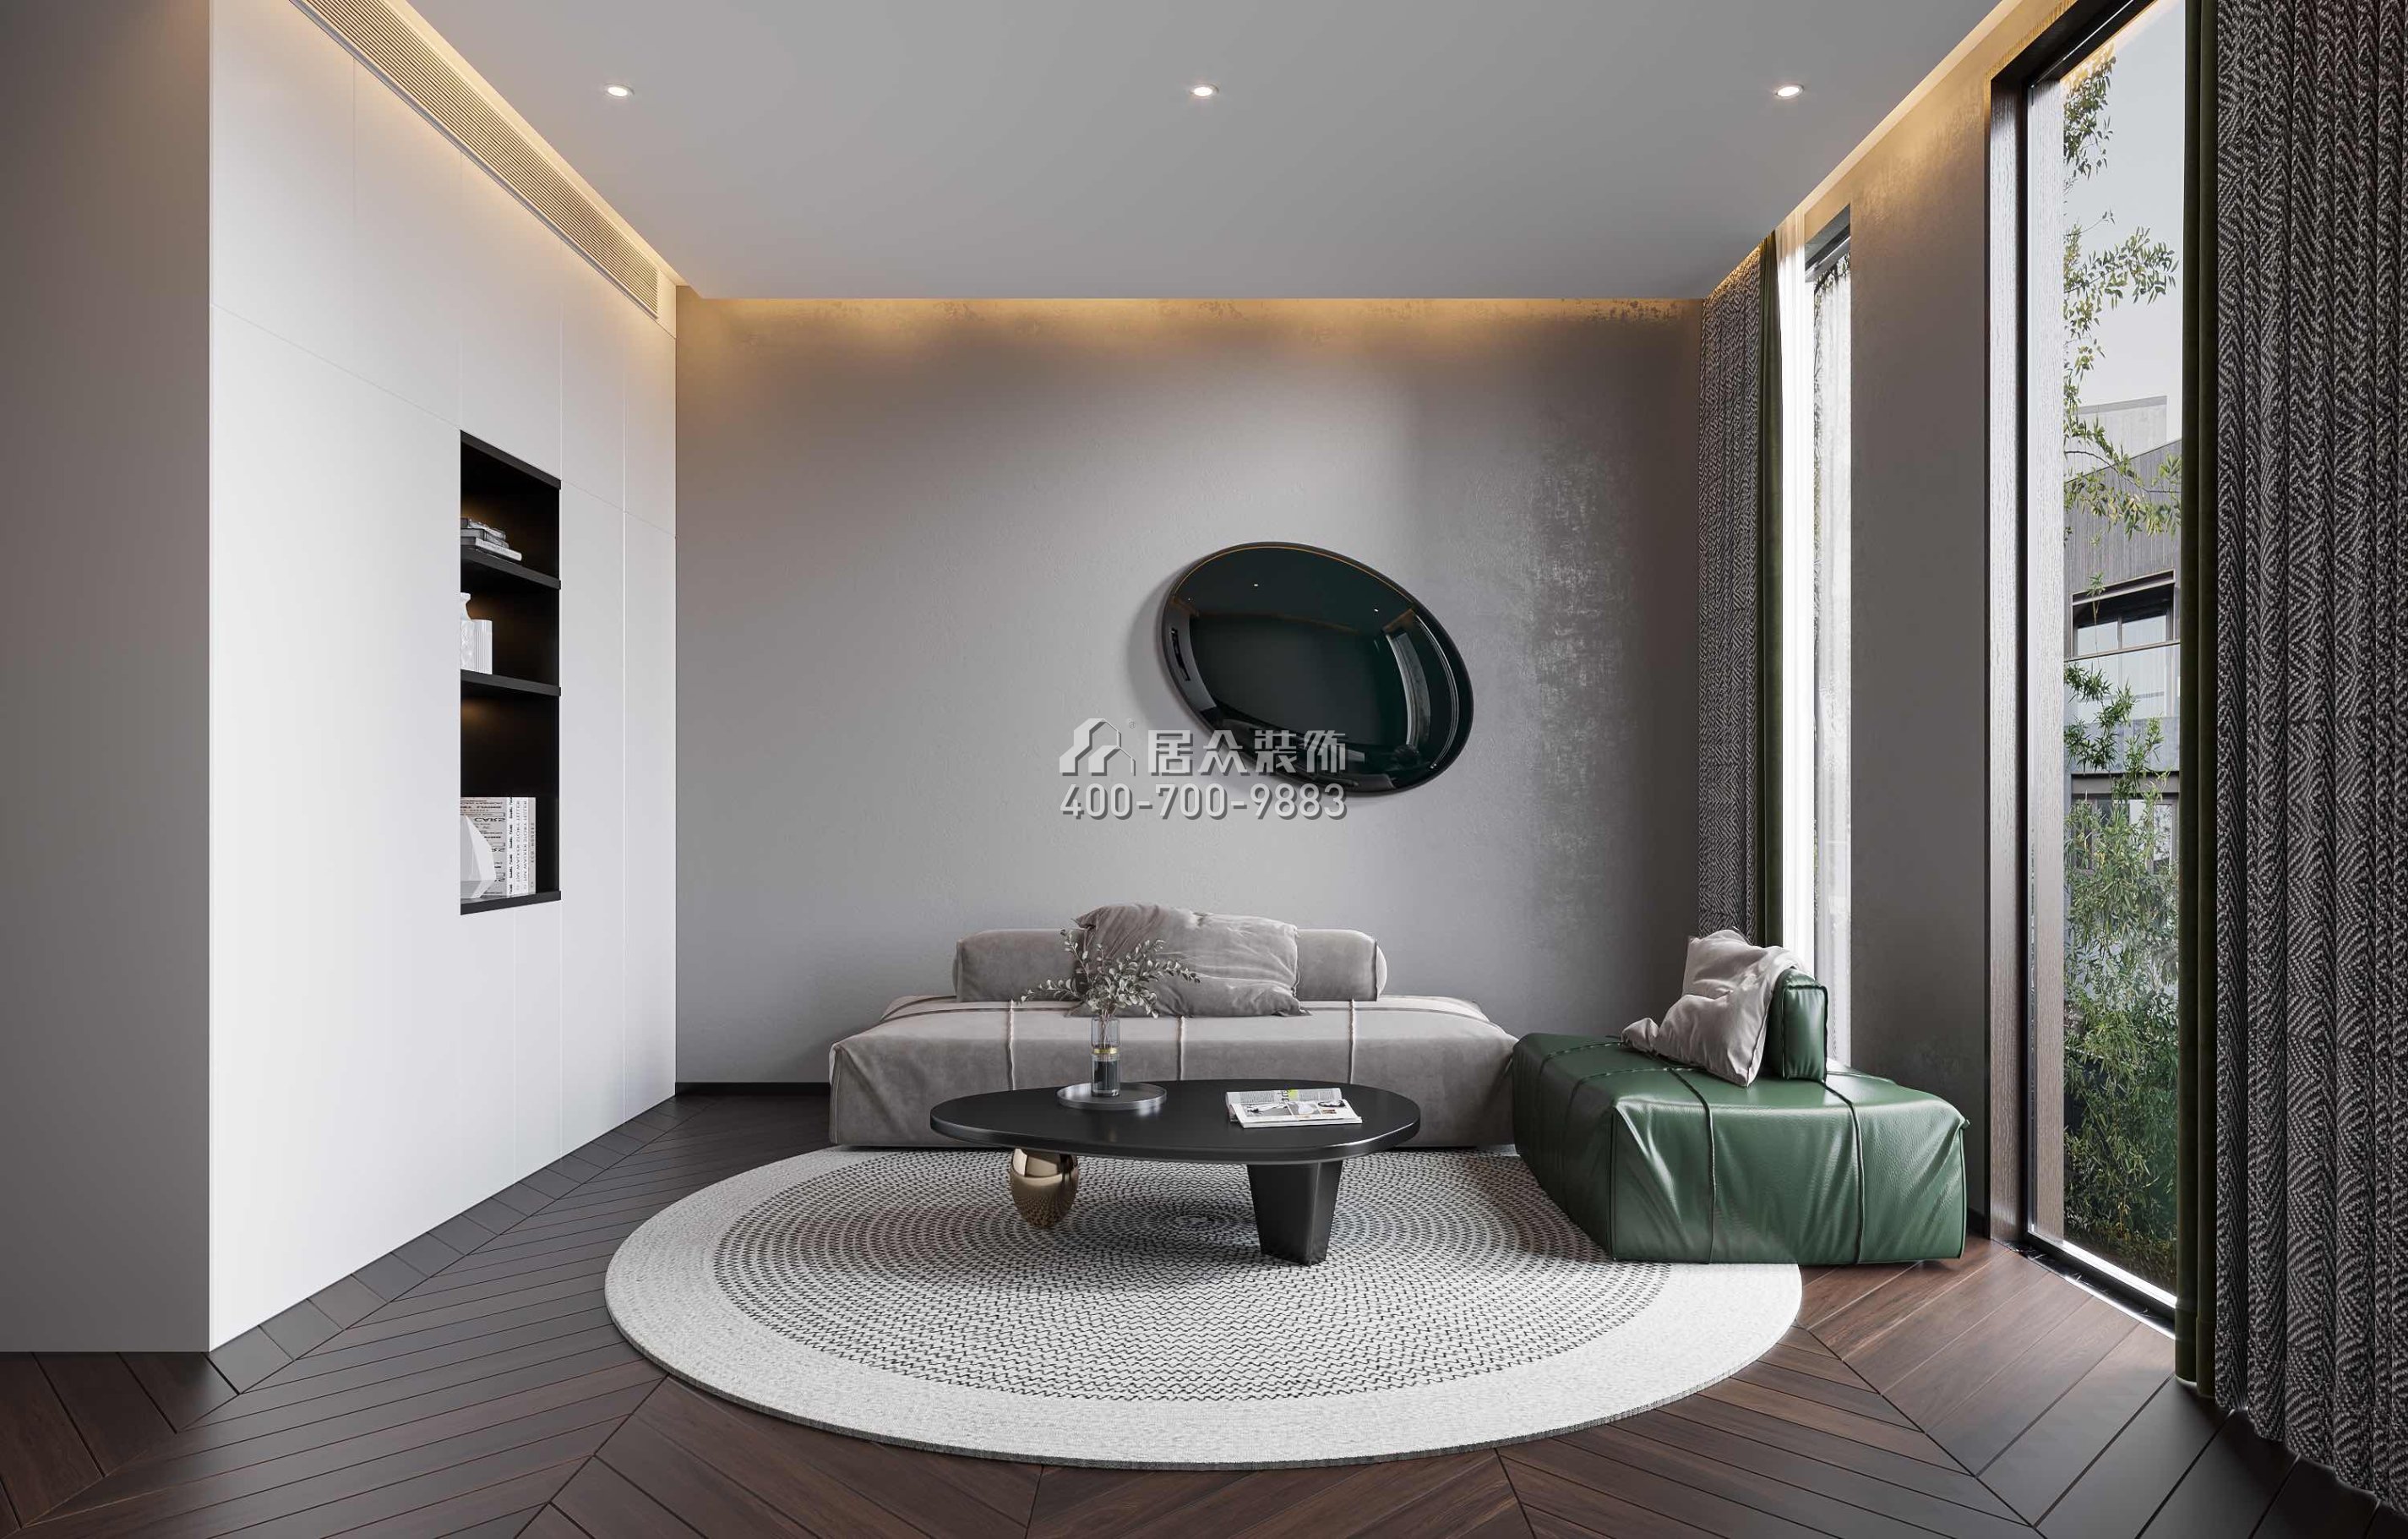 新世纪颐龙湾380平方米中式风格别墅户型卧室装修效果图